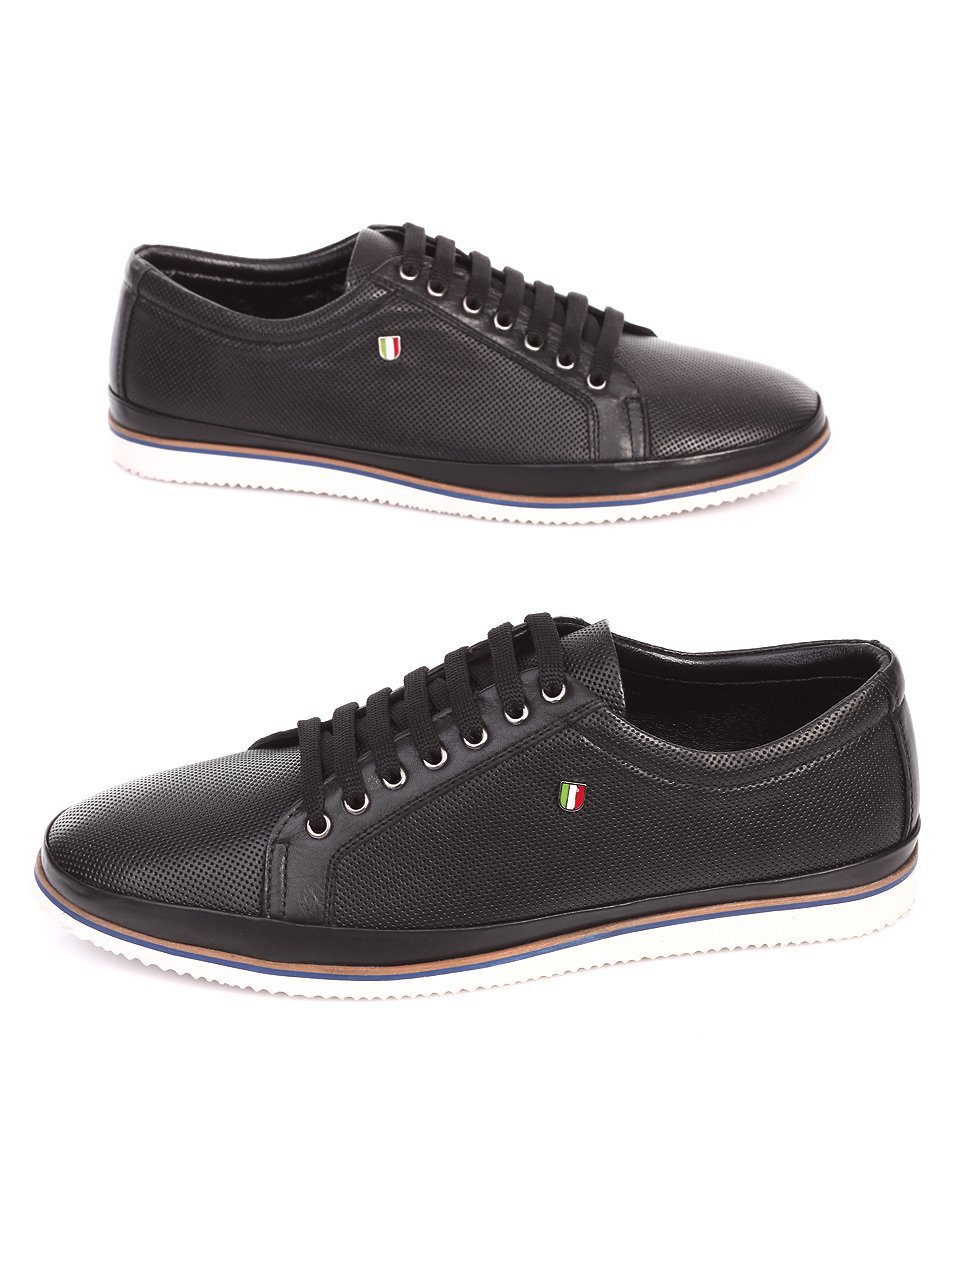 Ежедневни мъжки обувки от естествена кожа в черно 7AT-17608 black